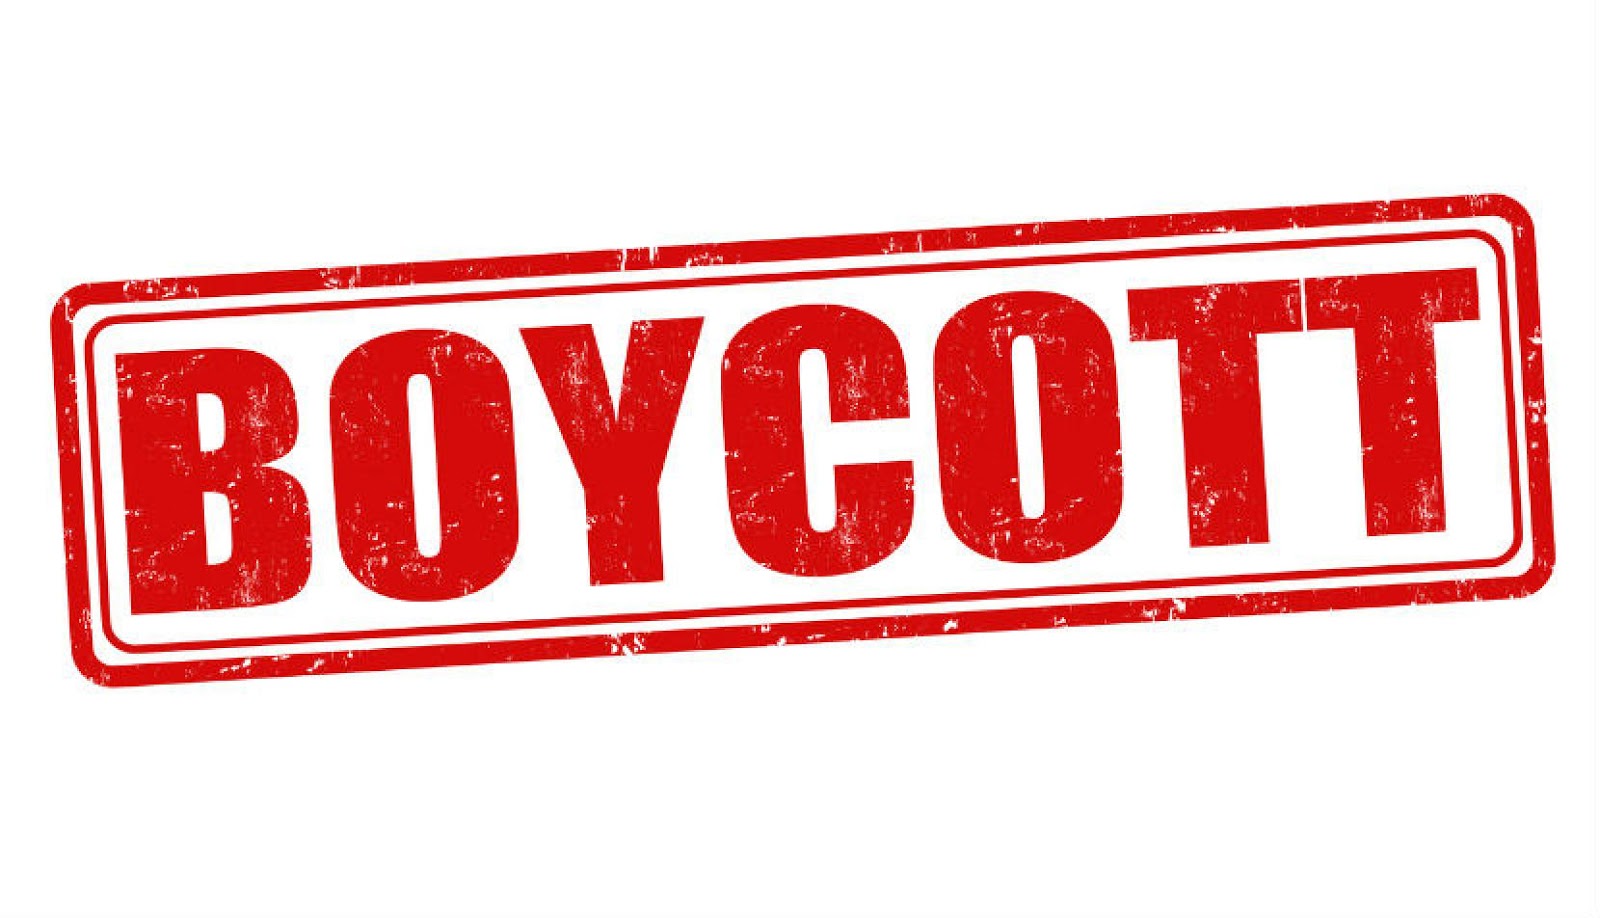 https://4.bp.blogspot.com/-92wK3ikOiuM/XBpS_N0IcsI/AAAAAAAAANg/-yf3OcTh1lUEduA1H4Mw4BeiVTzmNzuFgCLcBGAs/s1600/boycott_sign.jpg